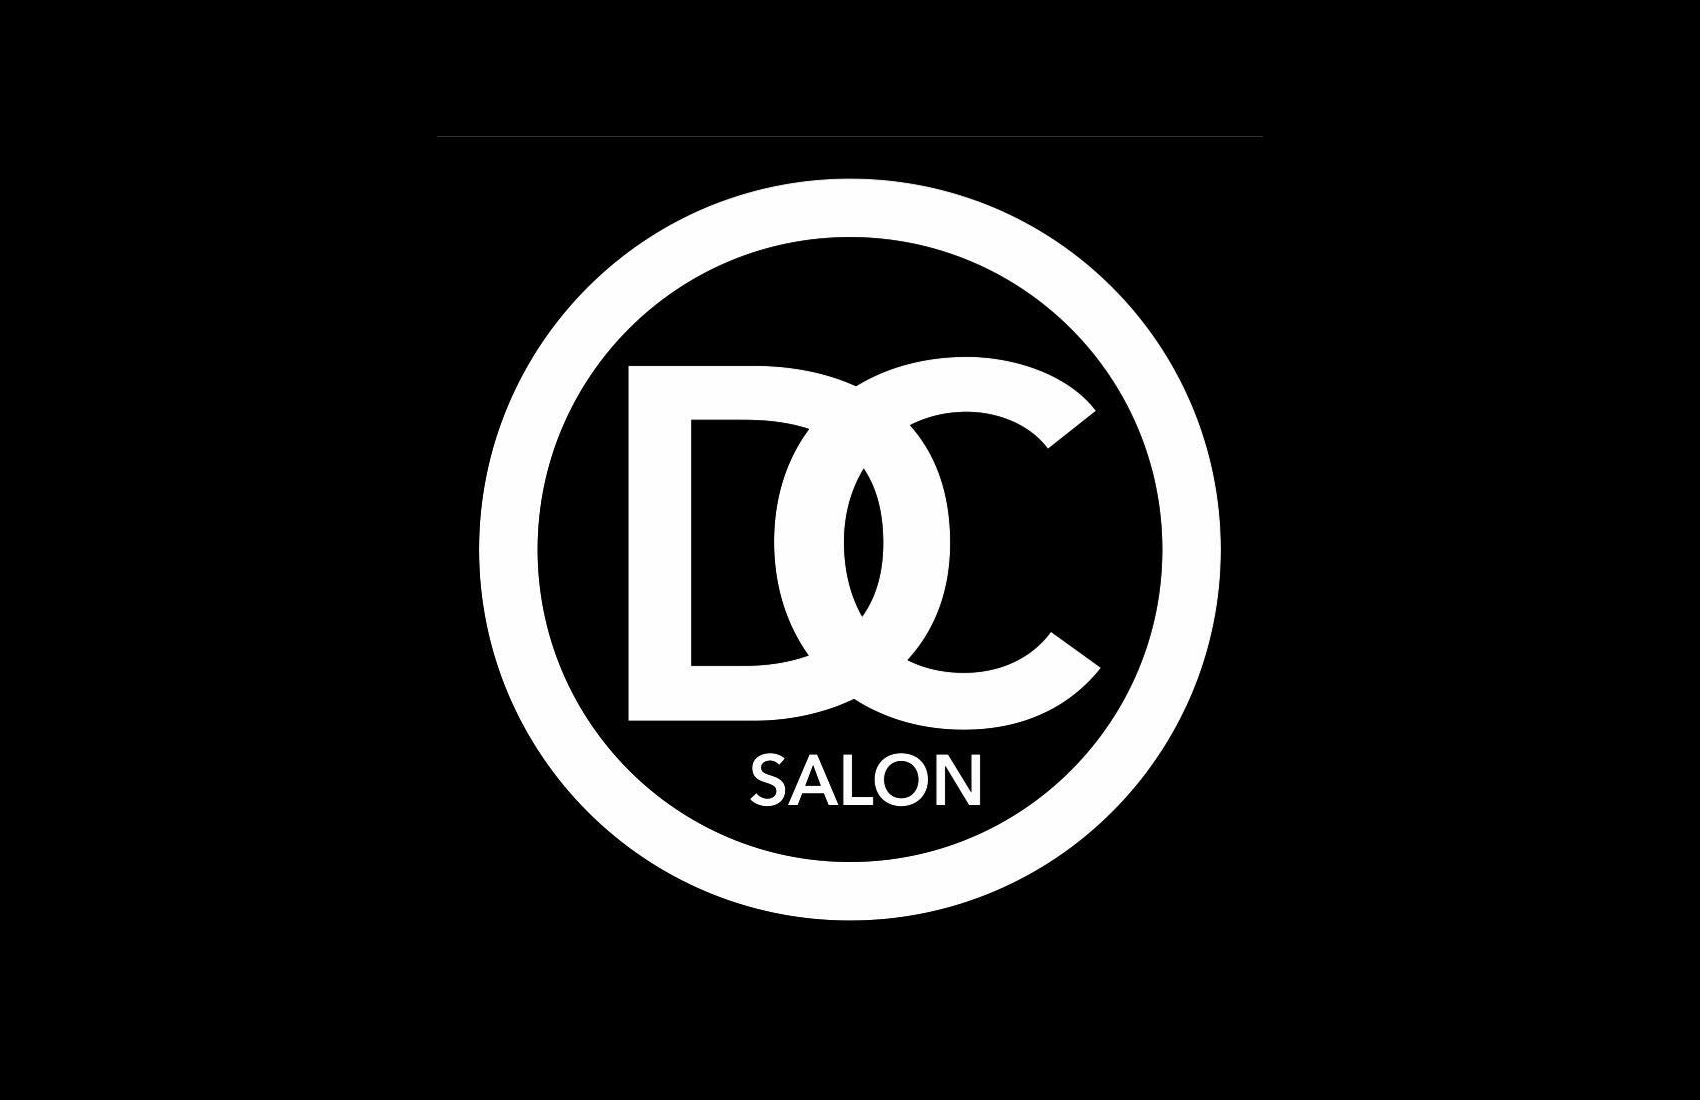 DC Salon Udine - Udine